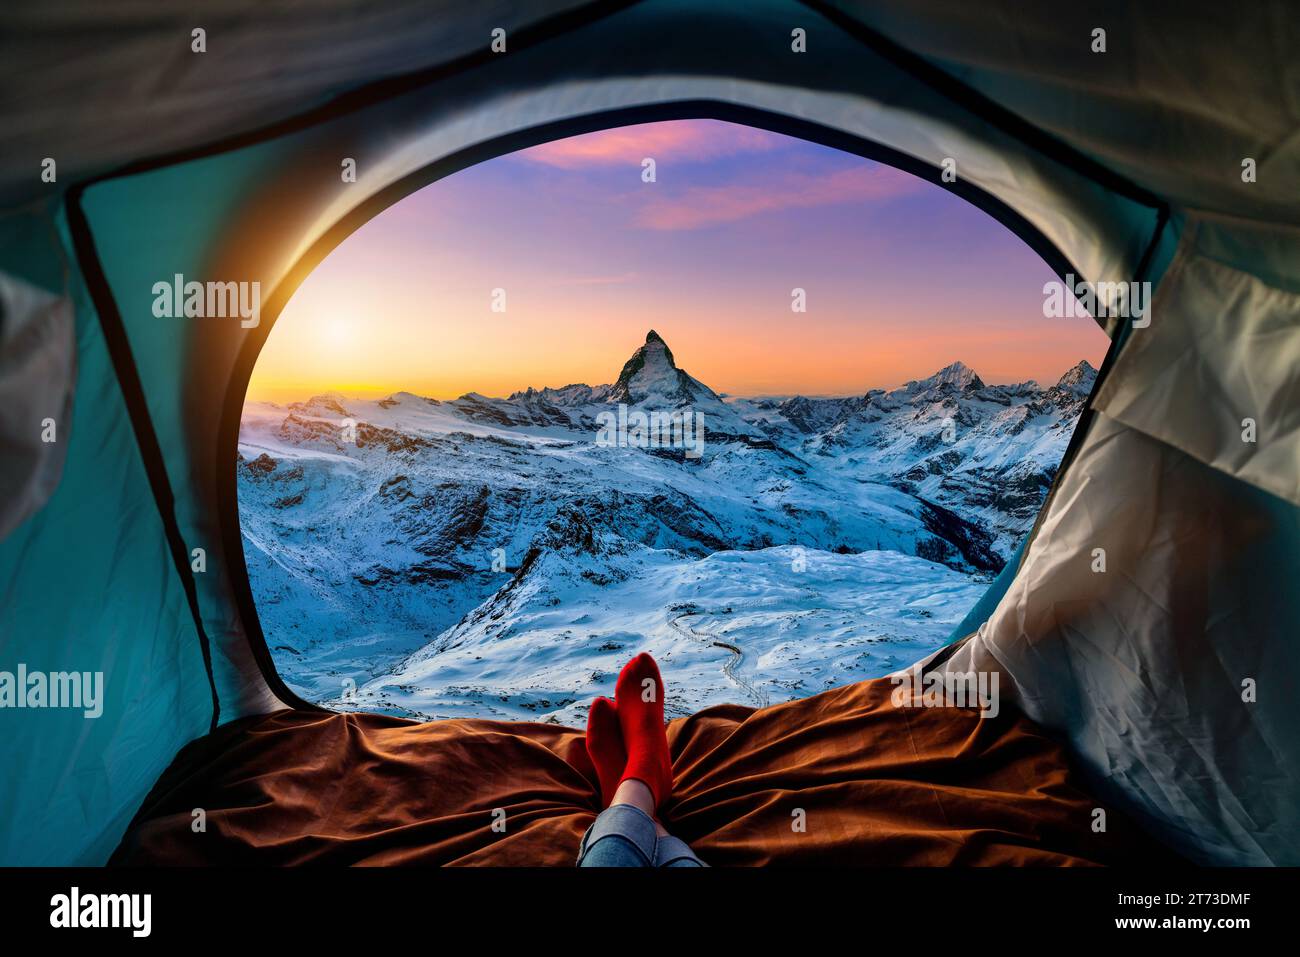 Femme jambe croisée sur la couverture dans la tente de camping avec des sacs de couchage sur la colline de montagne. Vue de l'intérieur avec les montagnes Matterhorn. Banque D'Images